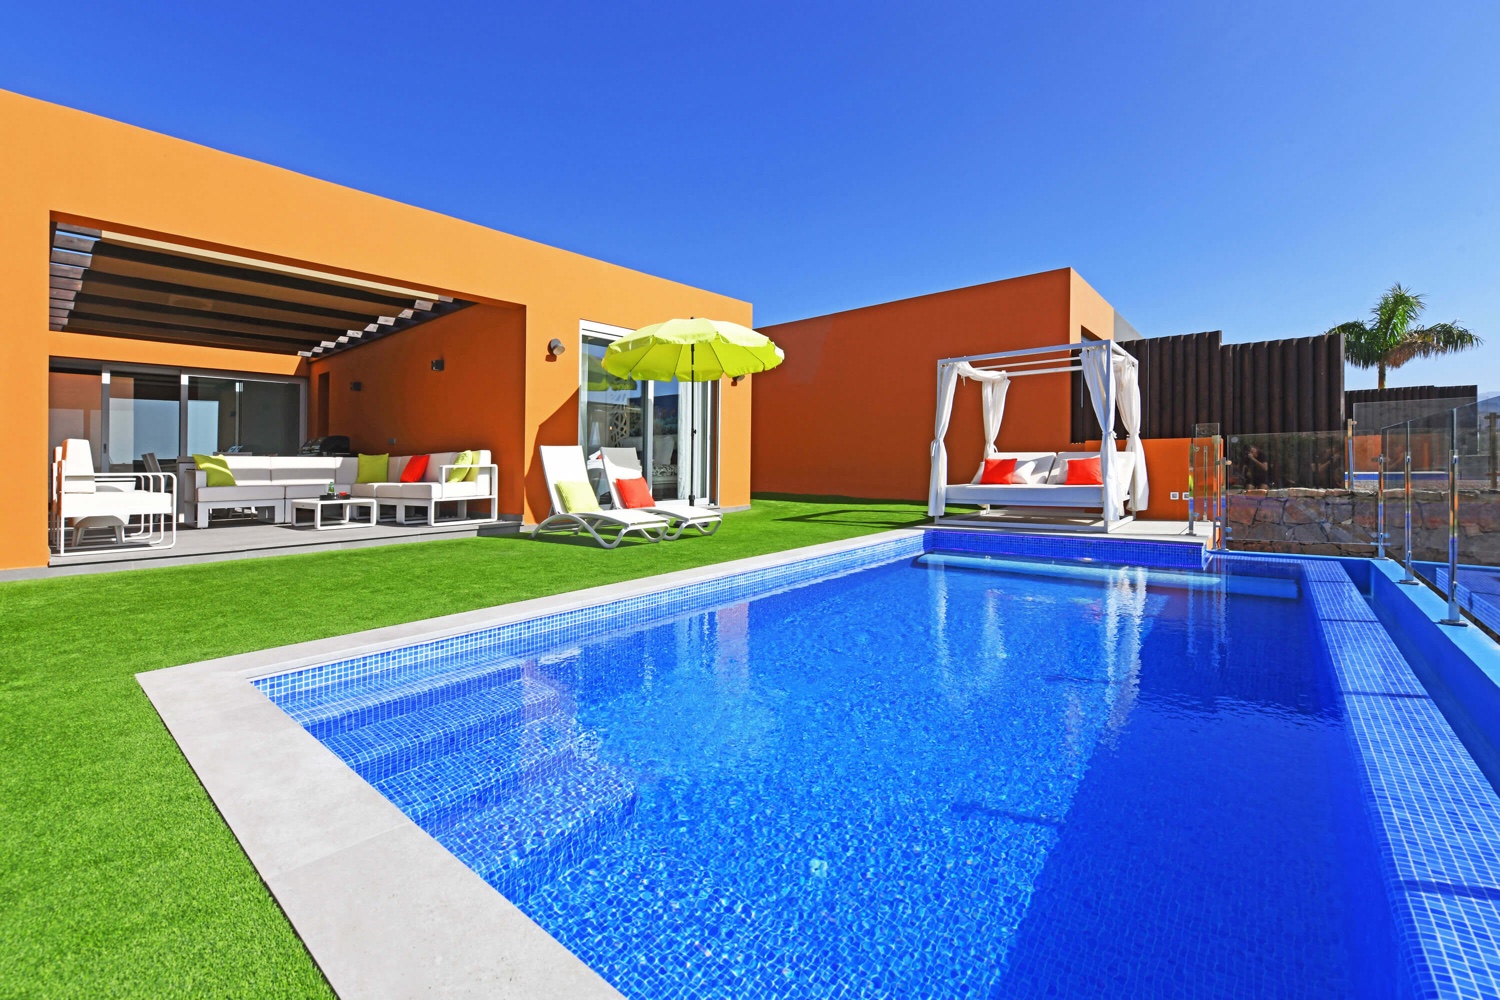 Moderne luxe woning met alle comfort, smaakvol interieur en een gezellige buitenruimte met een zonnig terras, privé zwembad en uitzicht op zee, alsmede een terras met eethoek